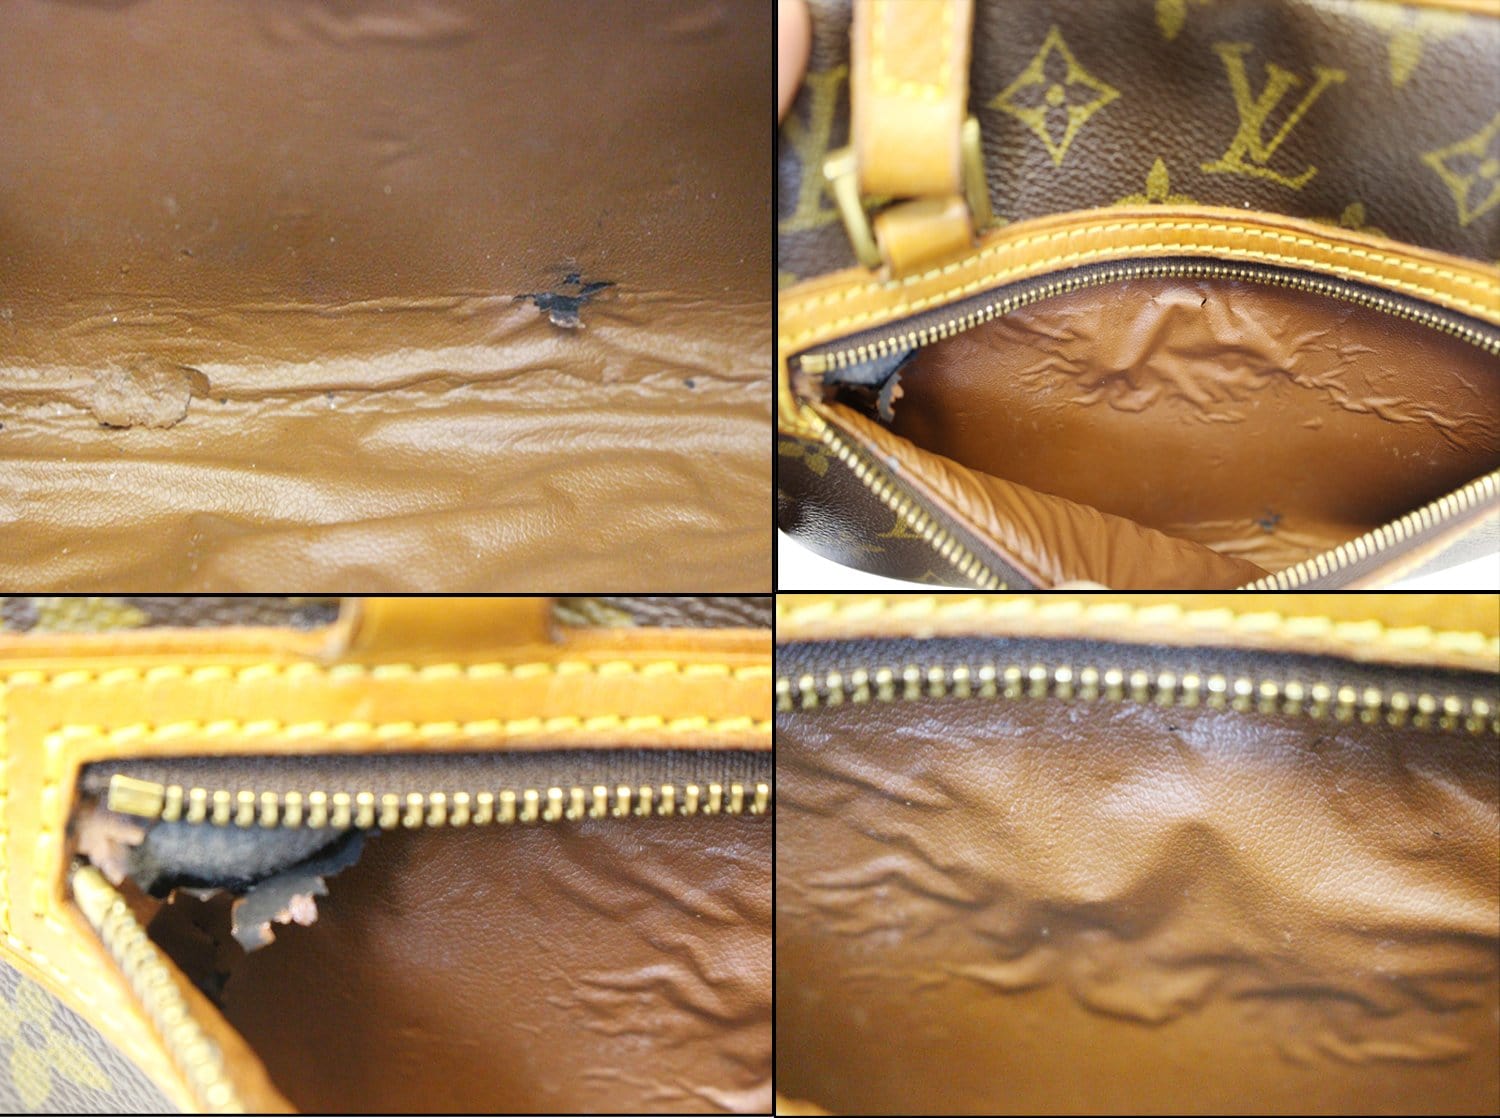 Louis Vuitton Cite MM Monogram Canvas Shoulder Bag on SALE